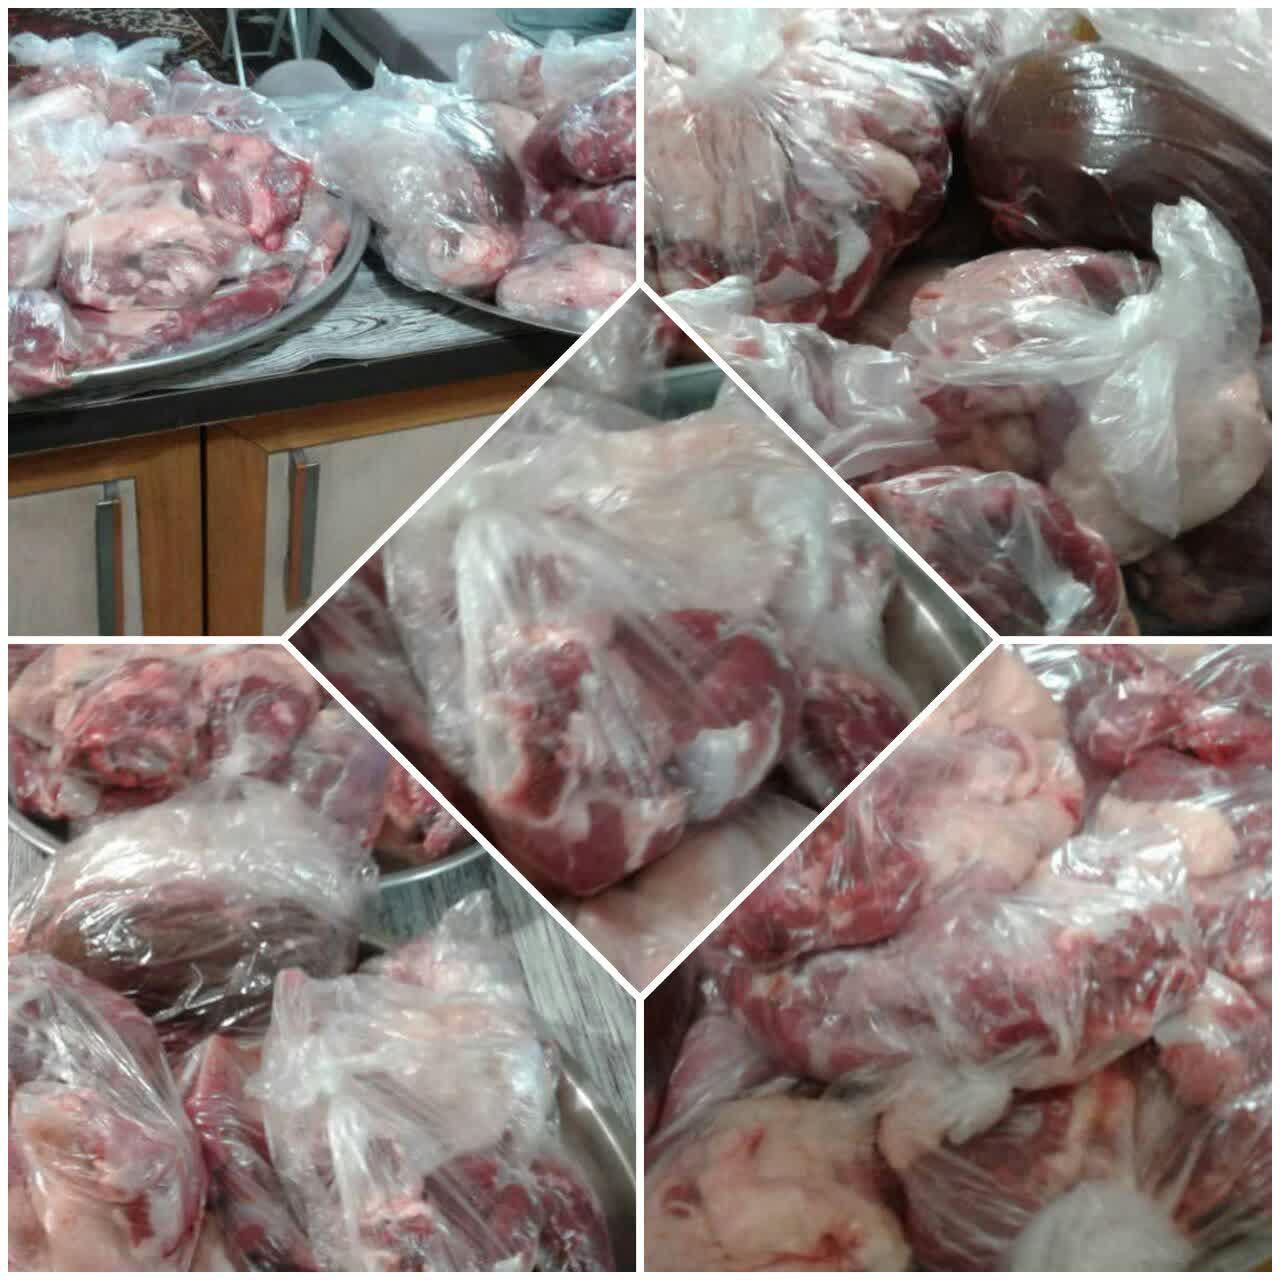 توزیع 100 بسته گوشت قربانی بین نیازمندان تهرانی